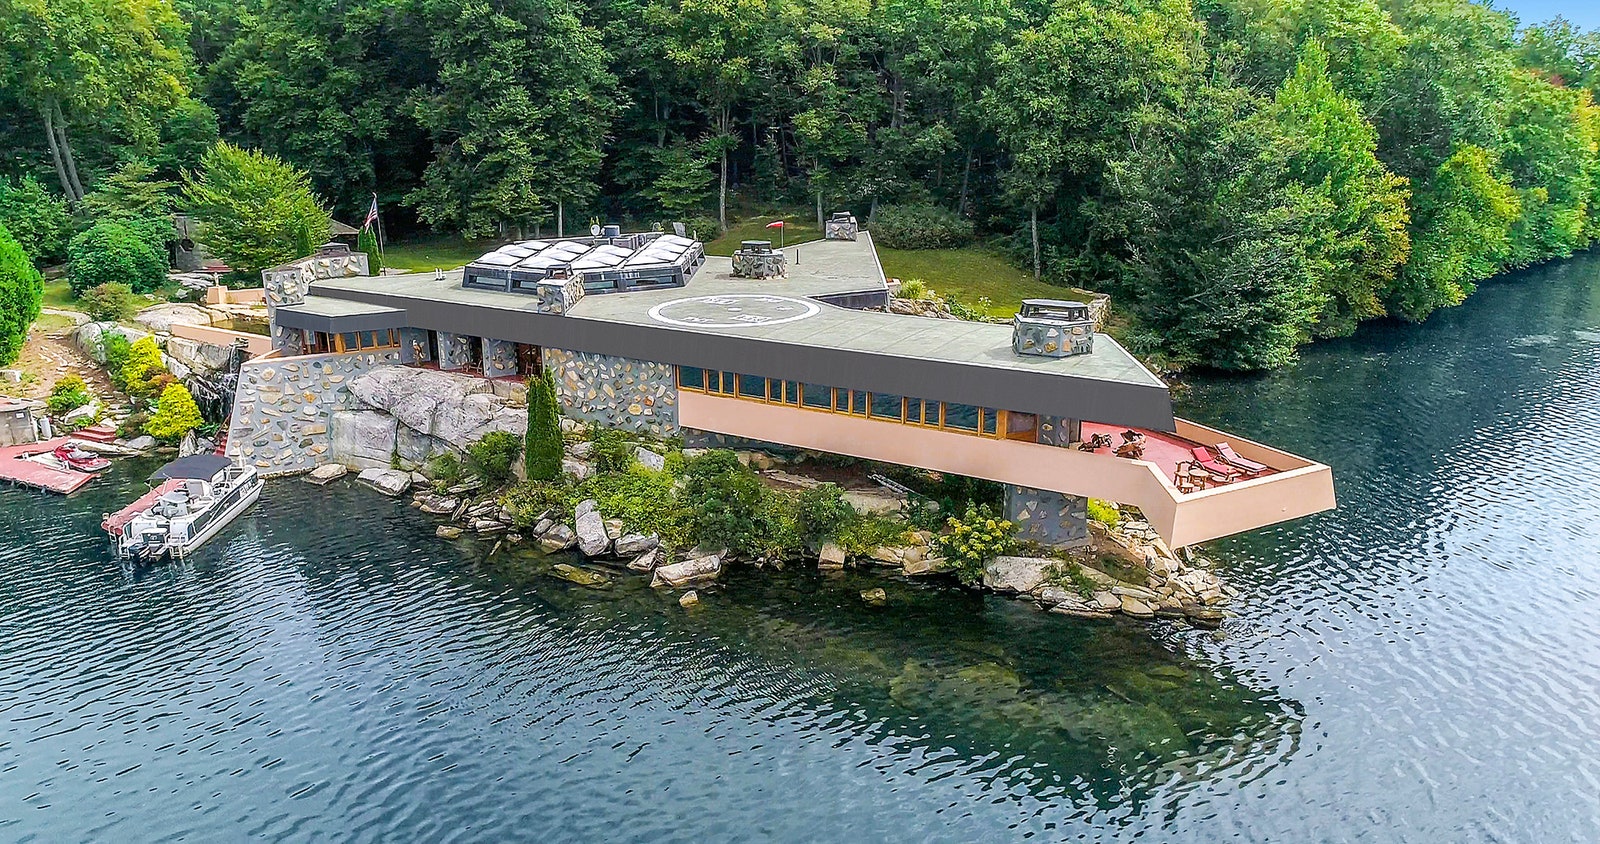 Райт или не Райт частный остров с домами по проекту Фрэнка Ллойда Райта продают за 129 млн долларов